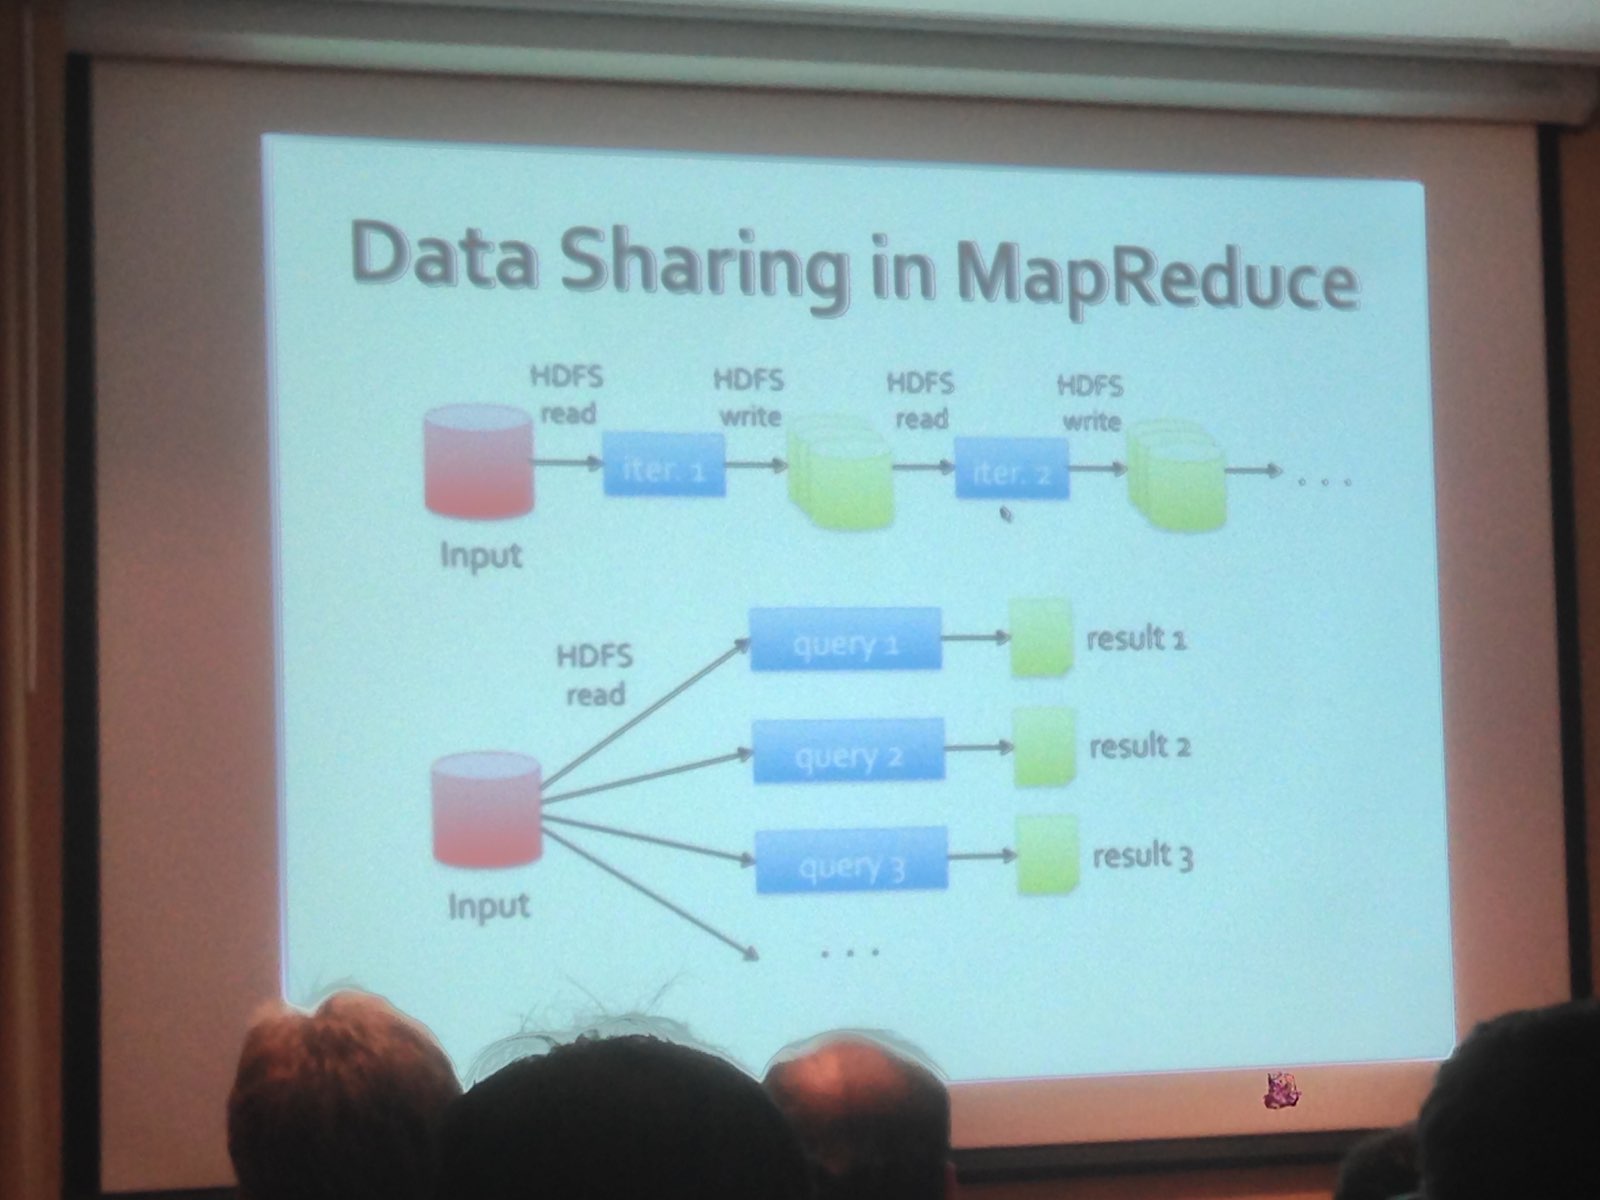 Data sharing in MapReduce